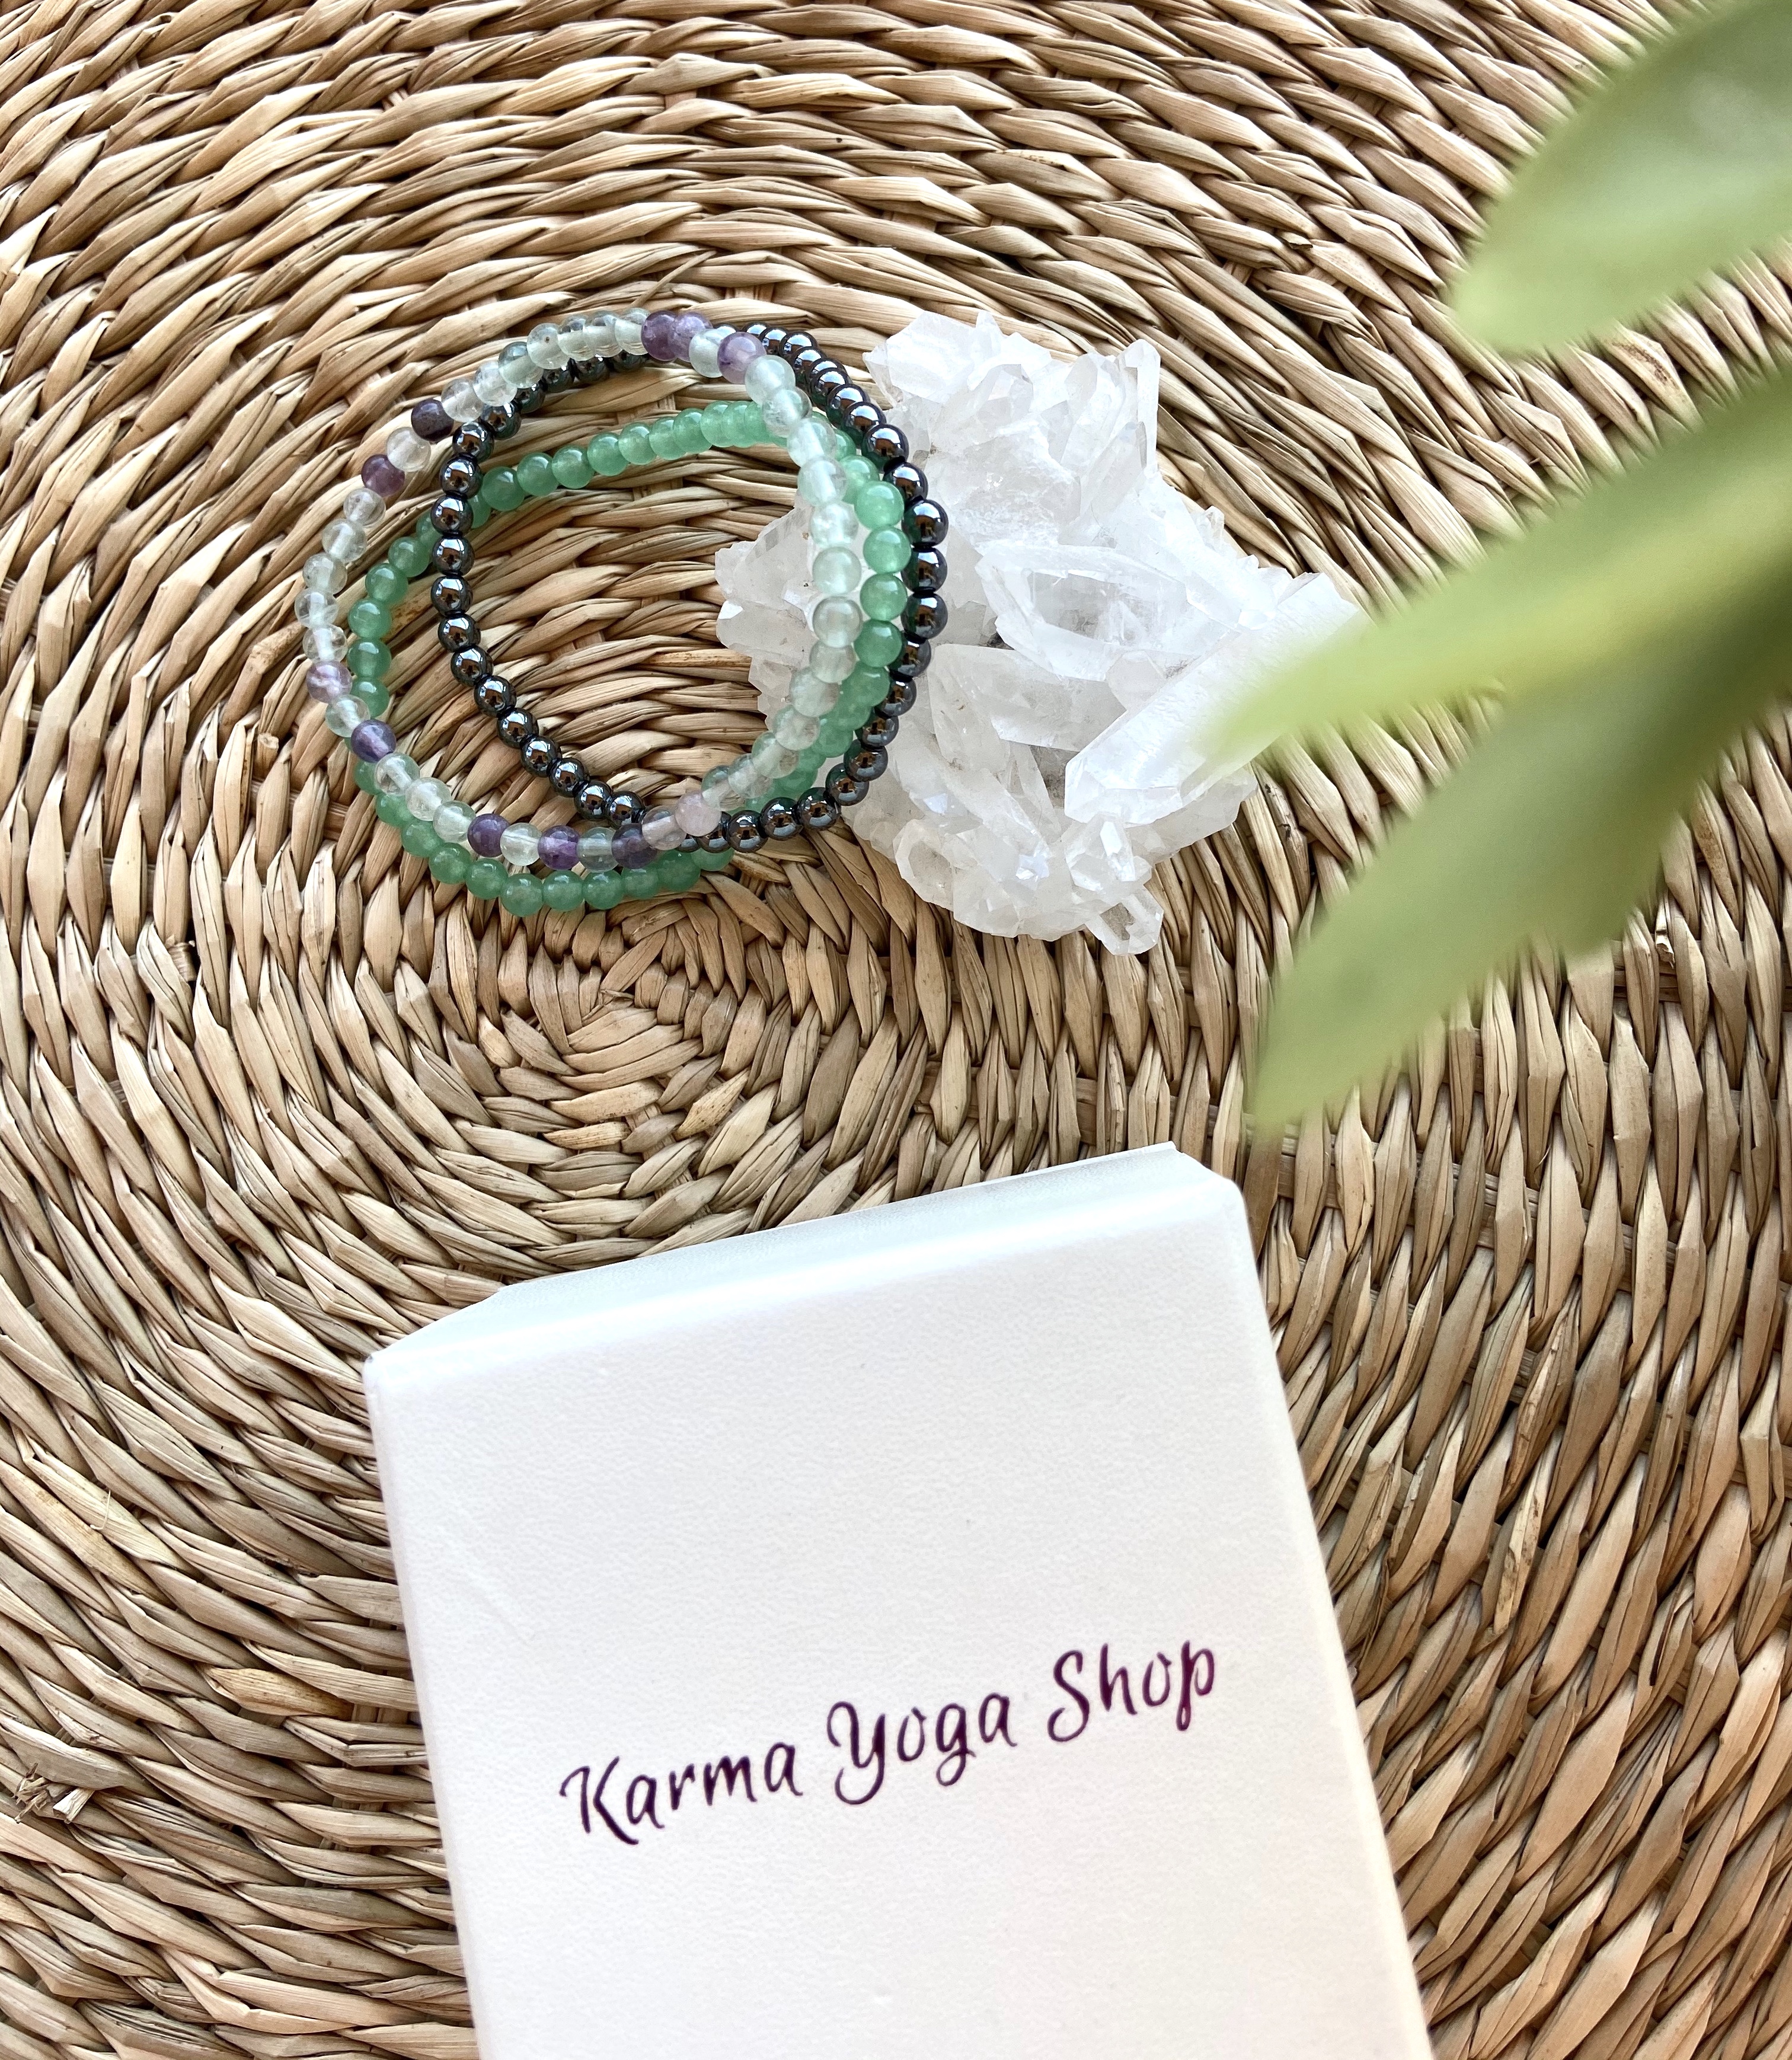 karma-yoga-shop-bijou-holistique-gemme-pierre-bracelet-abondance